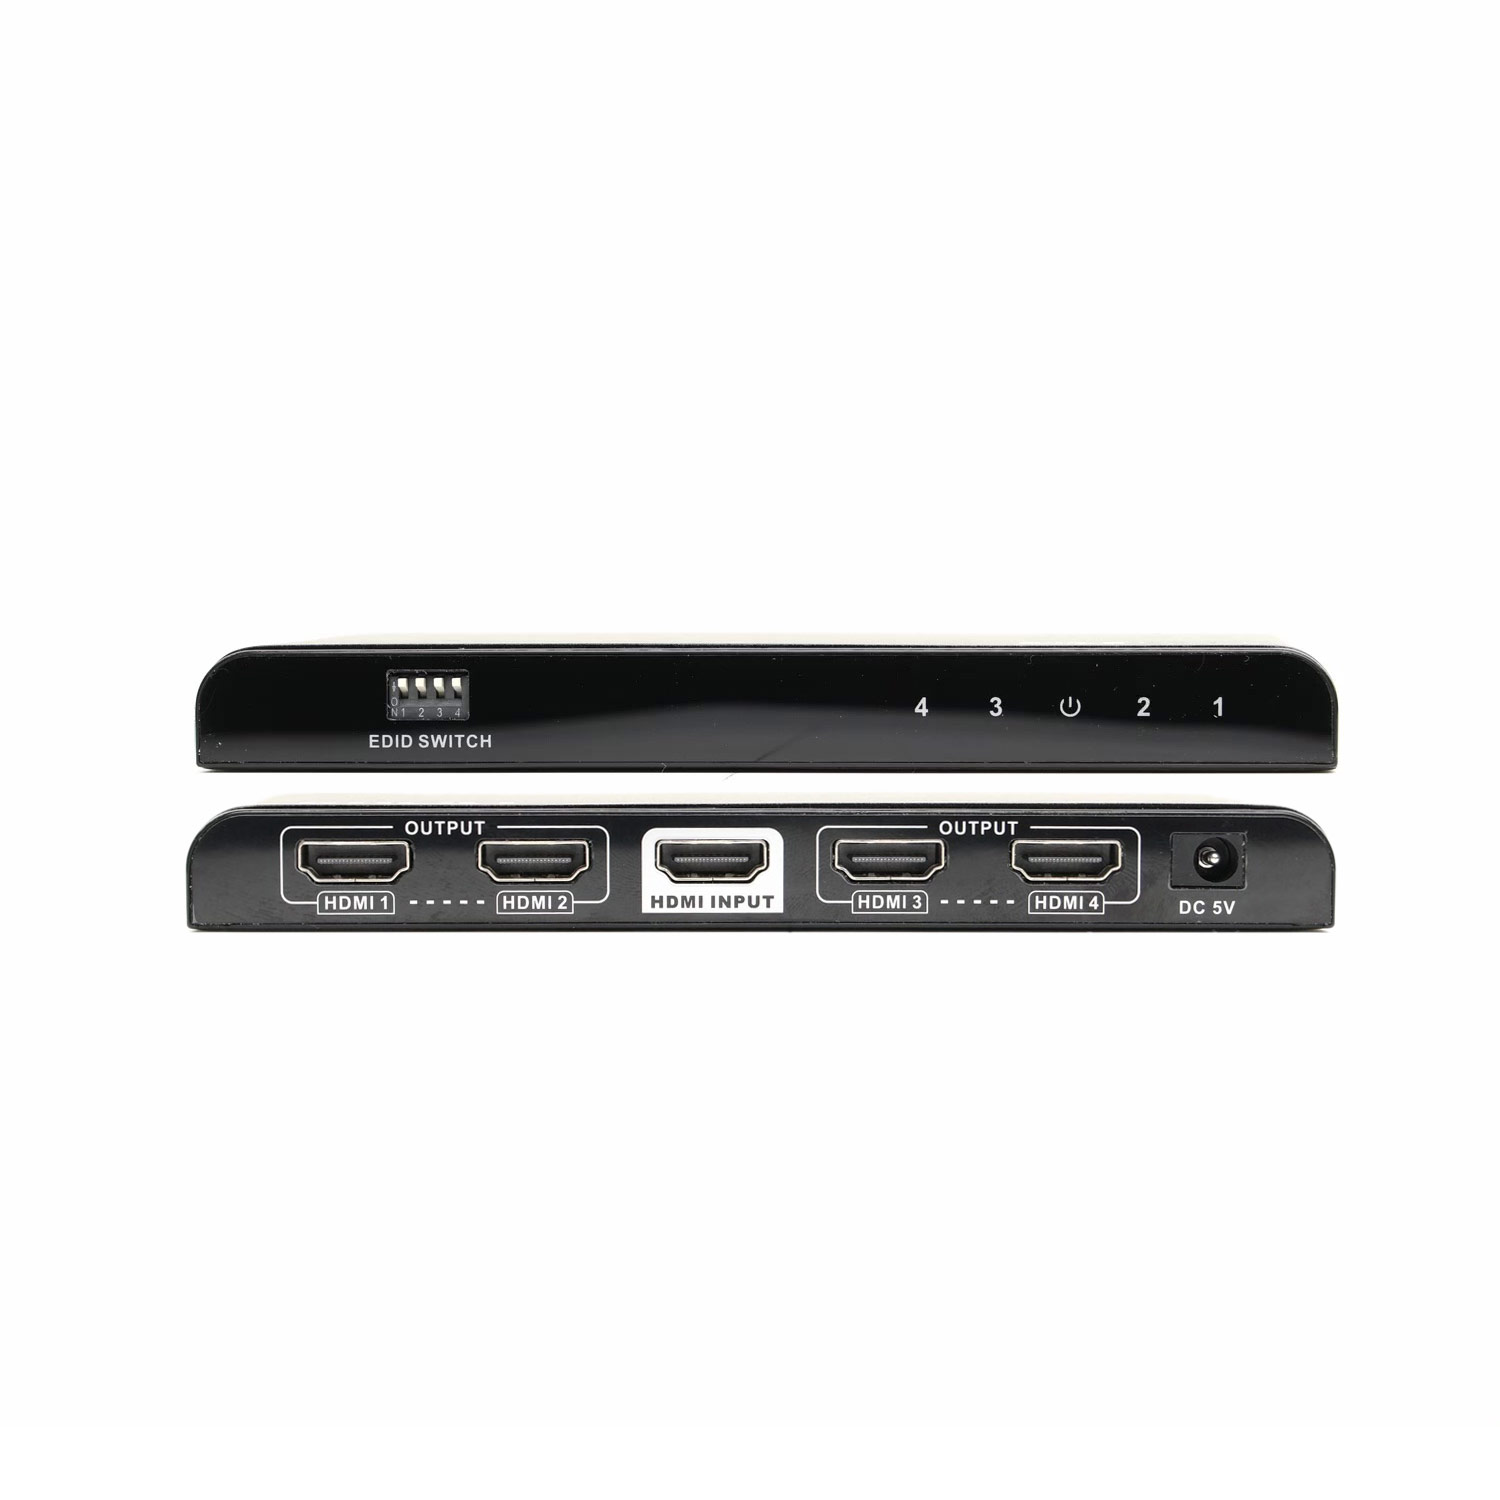 4K@60 4-port HDMI Splitter, Share 1 input to 4 displays, 1x4